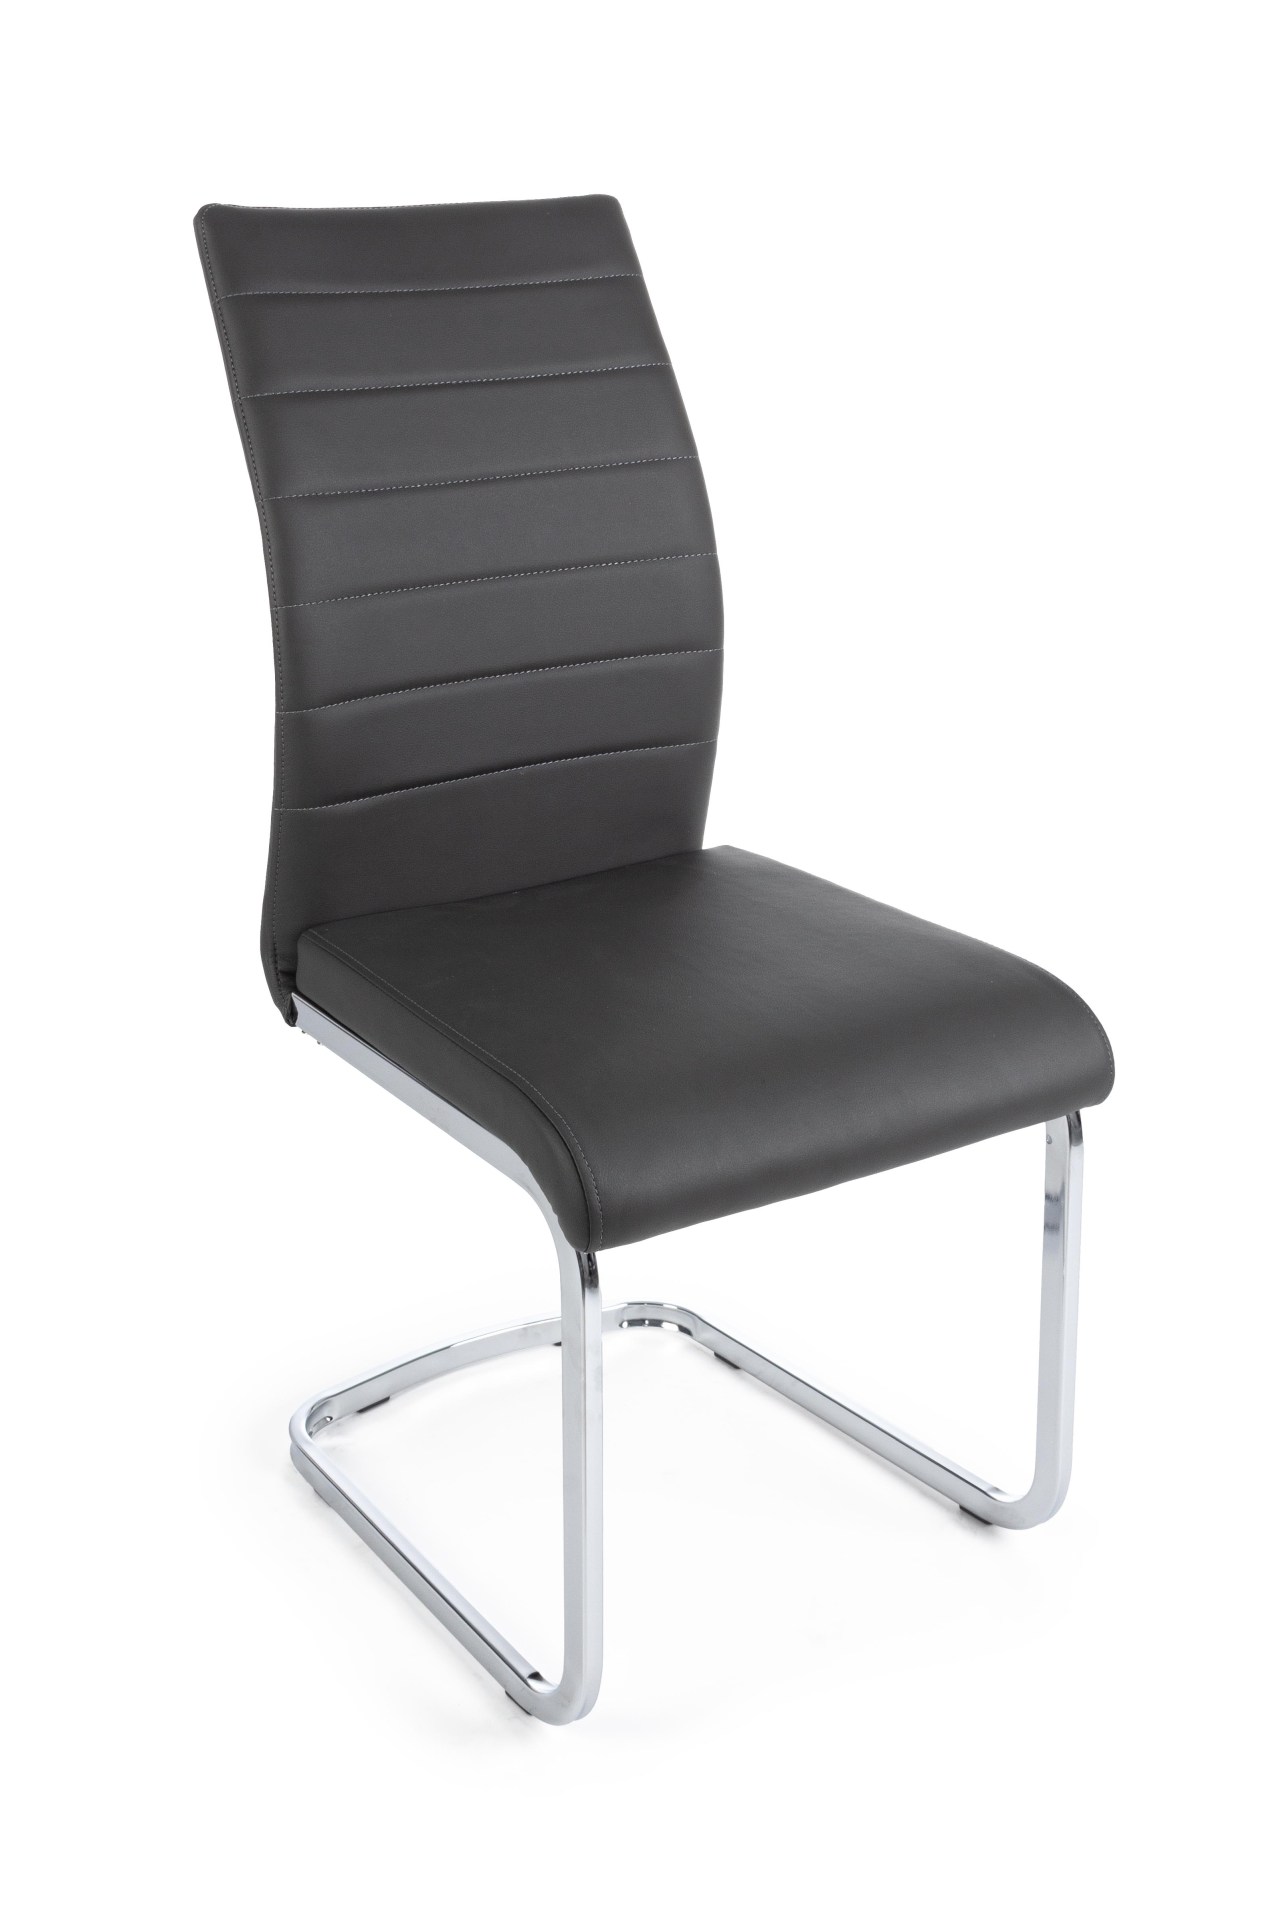 Der Stuhl Mayra überzeugt mit seinem modernem Design. Gefertigt wurde der Stuhl aus einem Kunststoff-Bezug, welcher einen dunkelgrauen Farbton besitzt. Das Gestell ist aus Metall, welches eine Silberne Farbe hat. Die Sitzhöhe beträgt 47 cm.